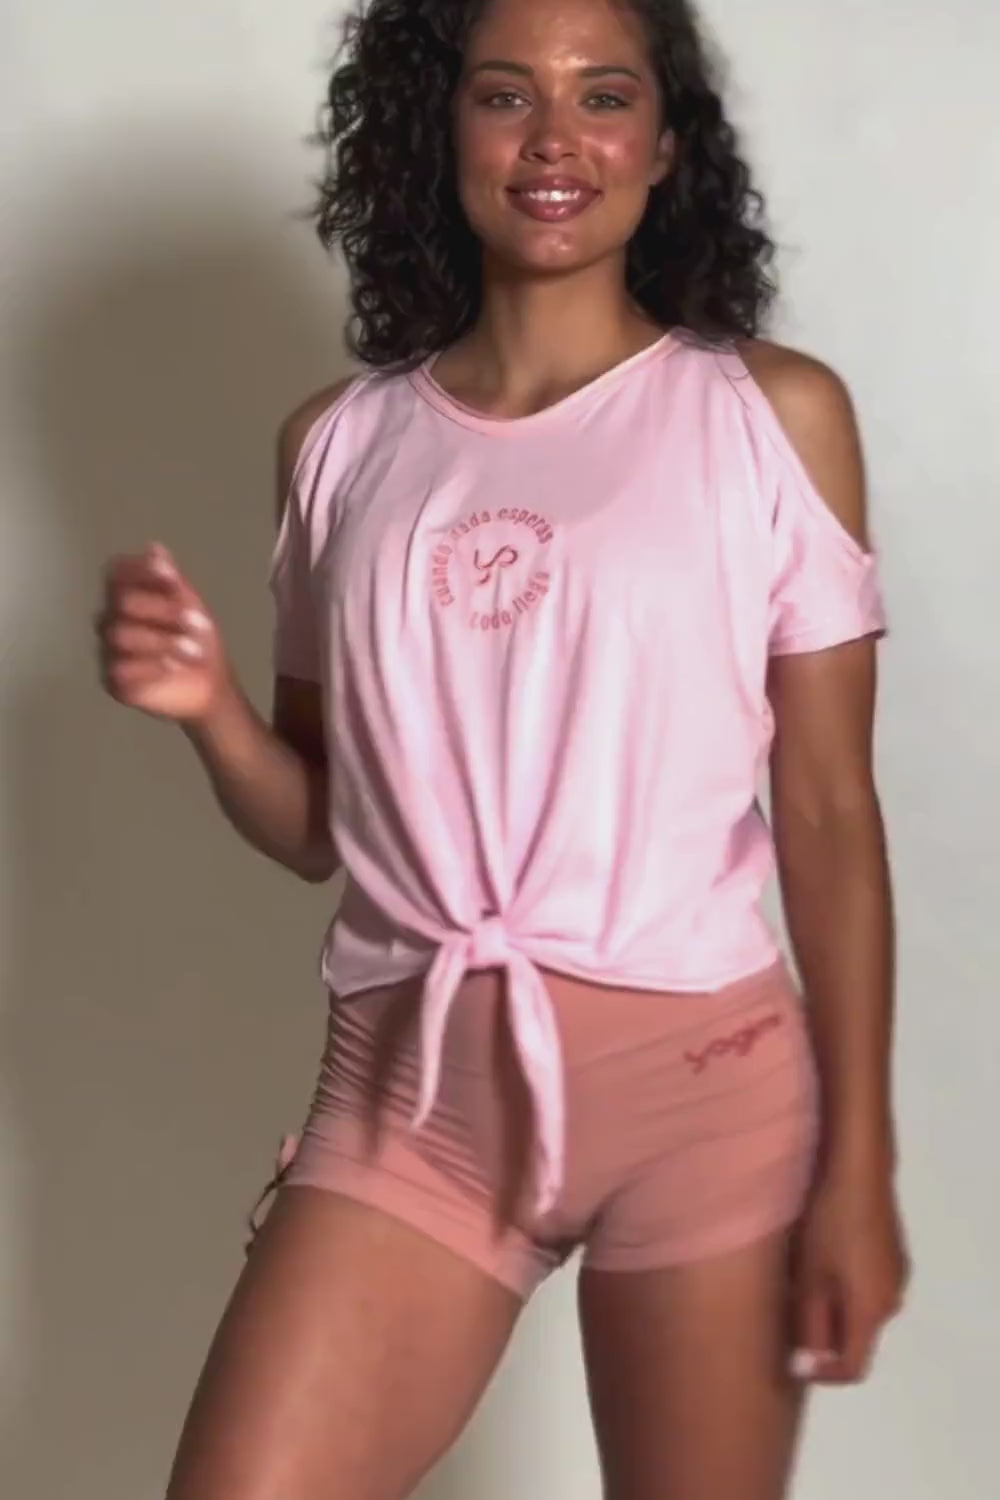 Camiseta Tshirt Comfort con nudo en color rosa Rose Shadow Yogimi. Camiseta holgada con diseño cómodo y frase bordada "Cuando nada esperas todo llega".